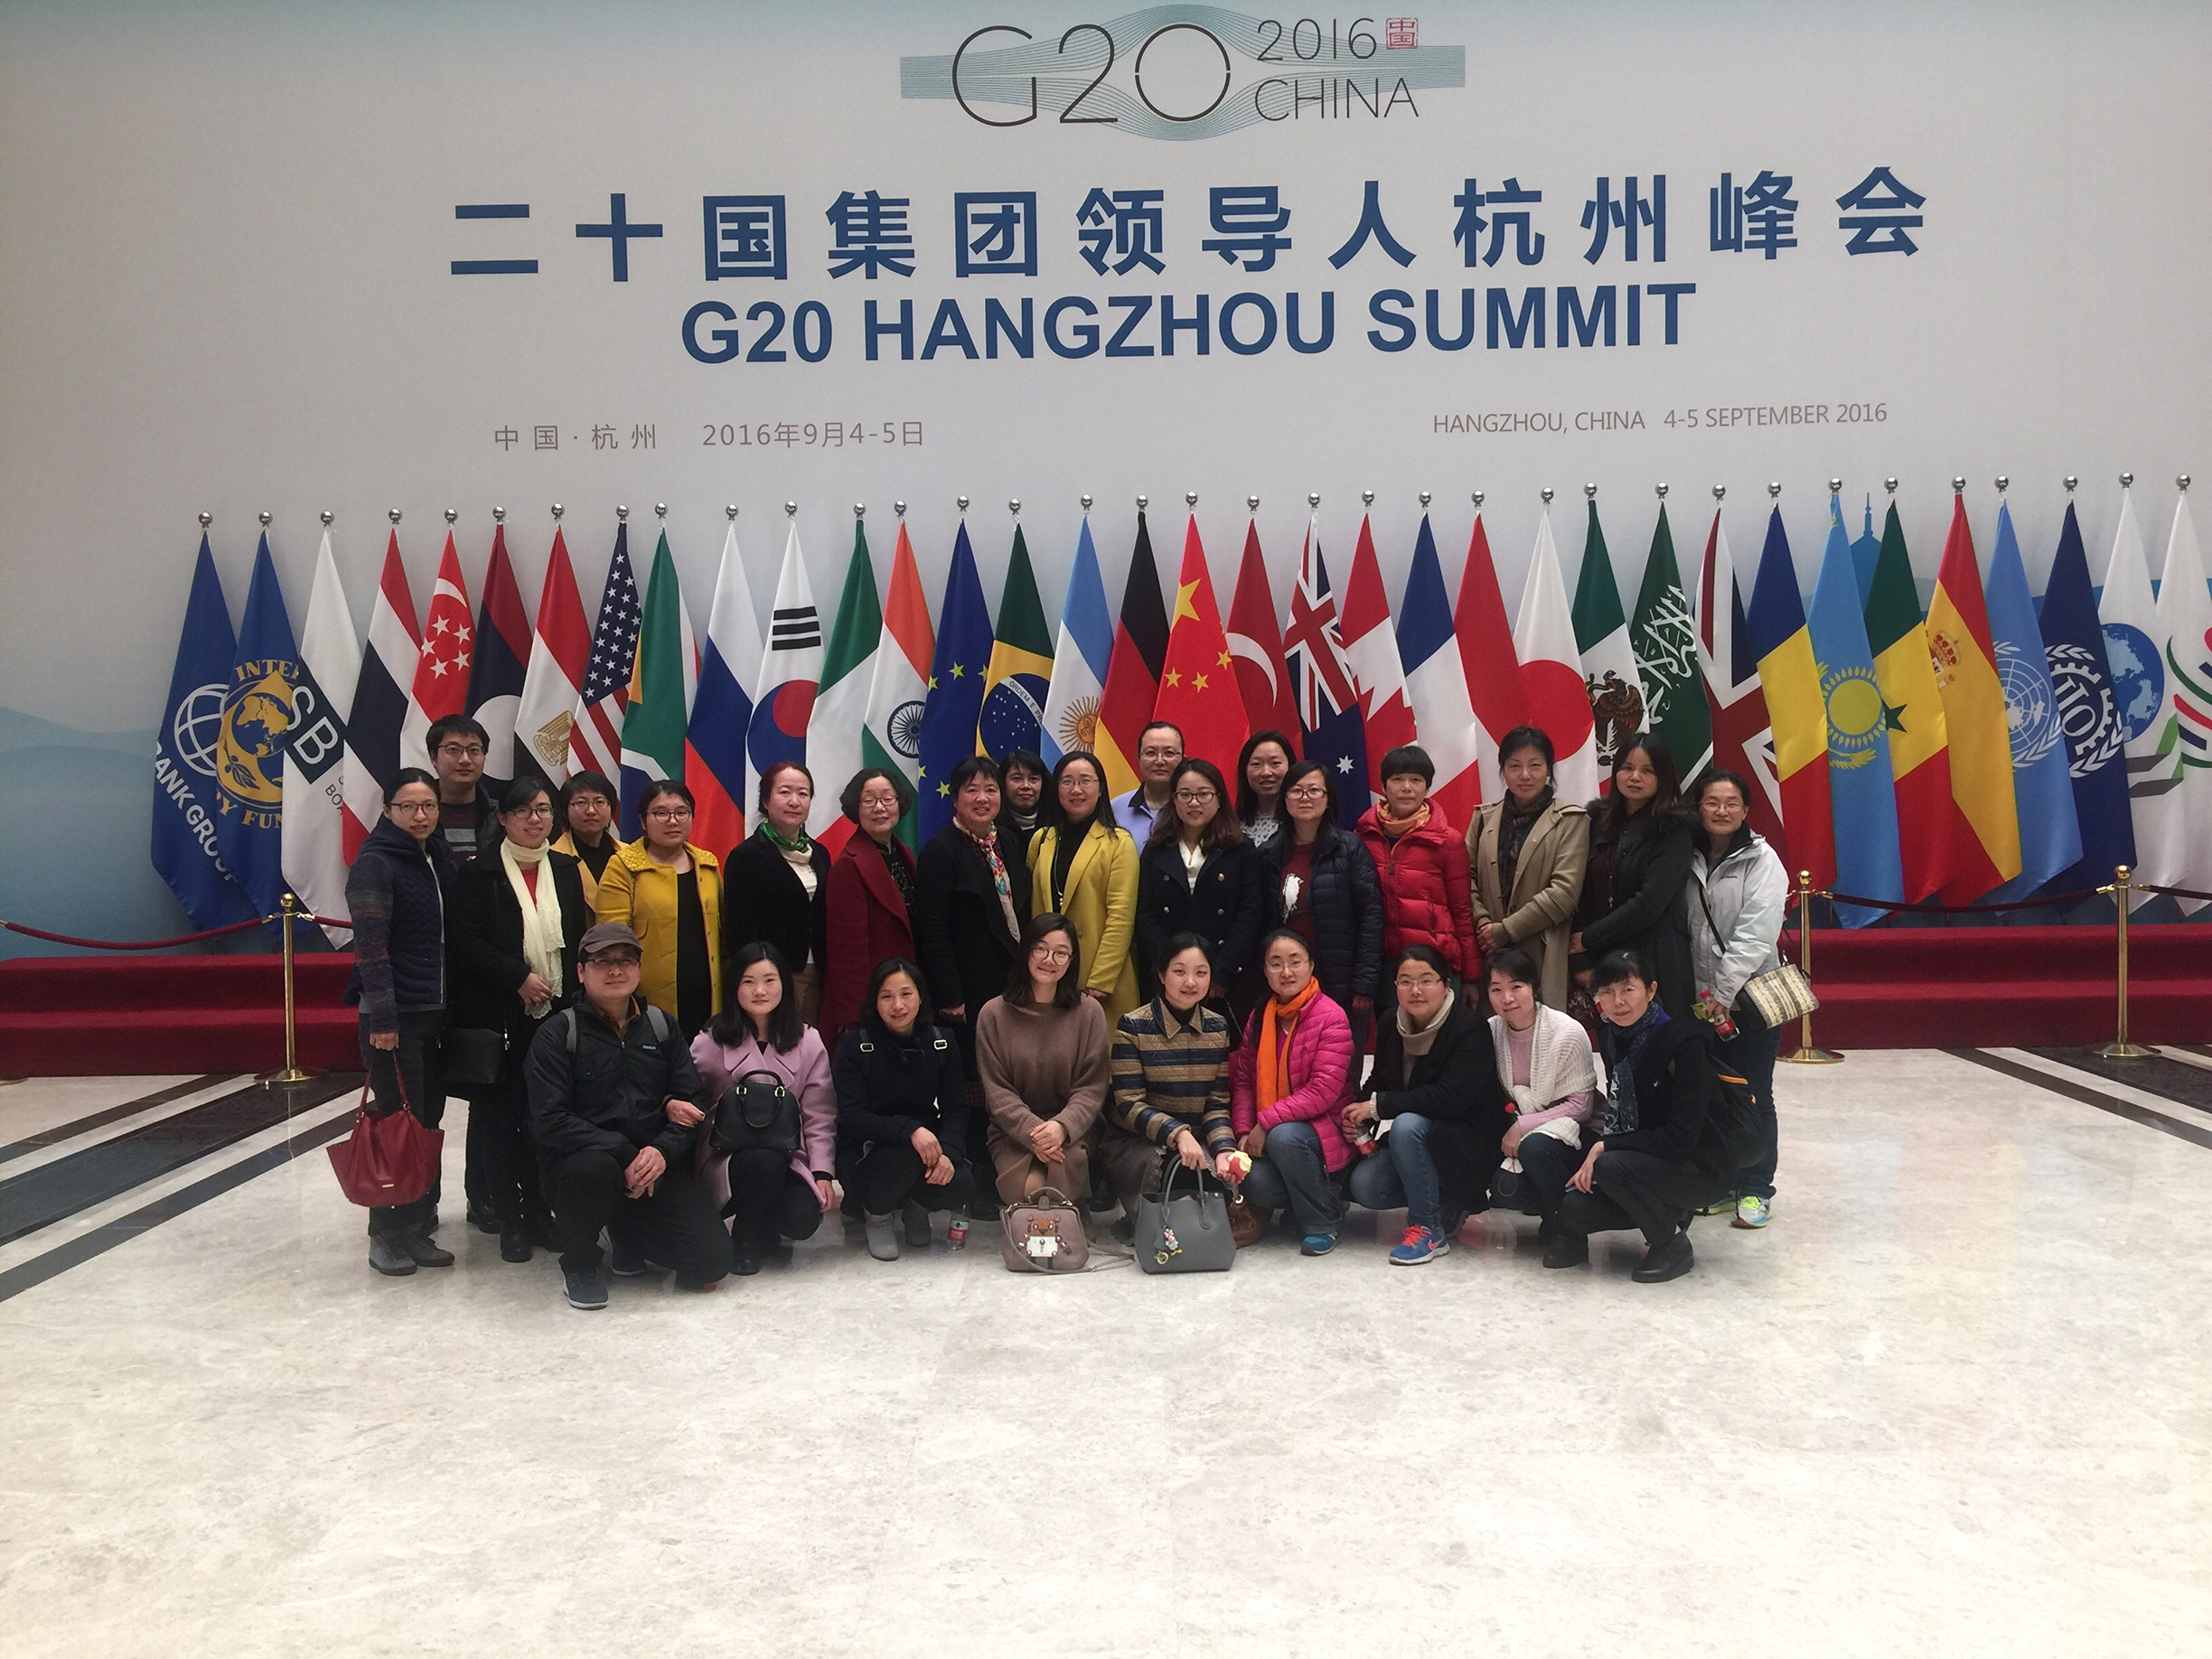 170308信息学院分工会组织女教工参观G20主会场-1.jpg